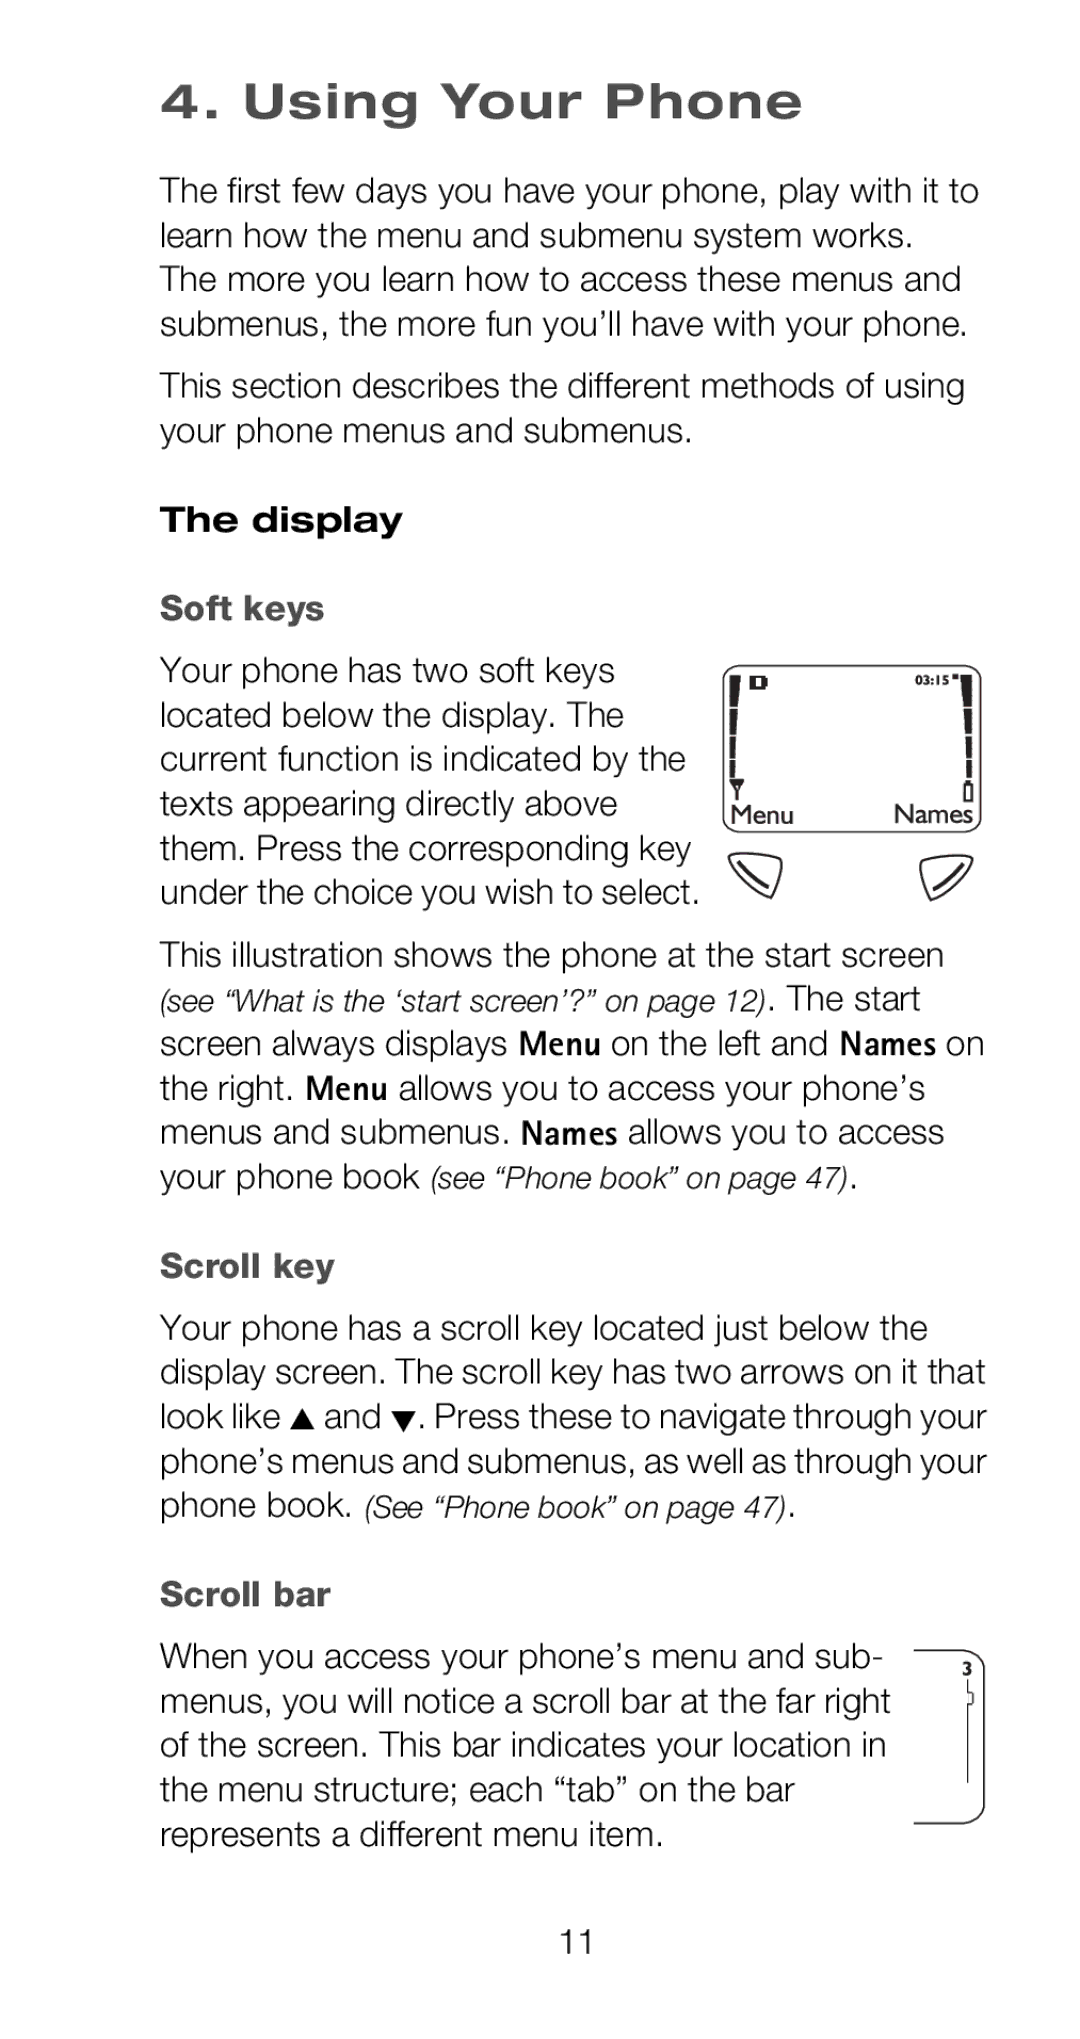 Nokia 6160 manual Using Your Phone, Display, Soft keys, Scroll key, Scroll bar 